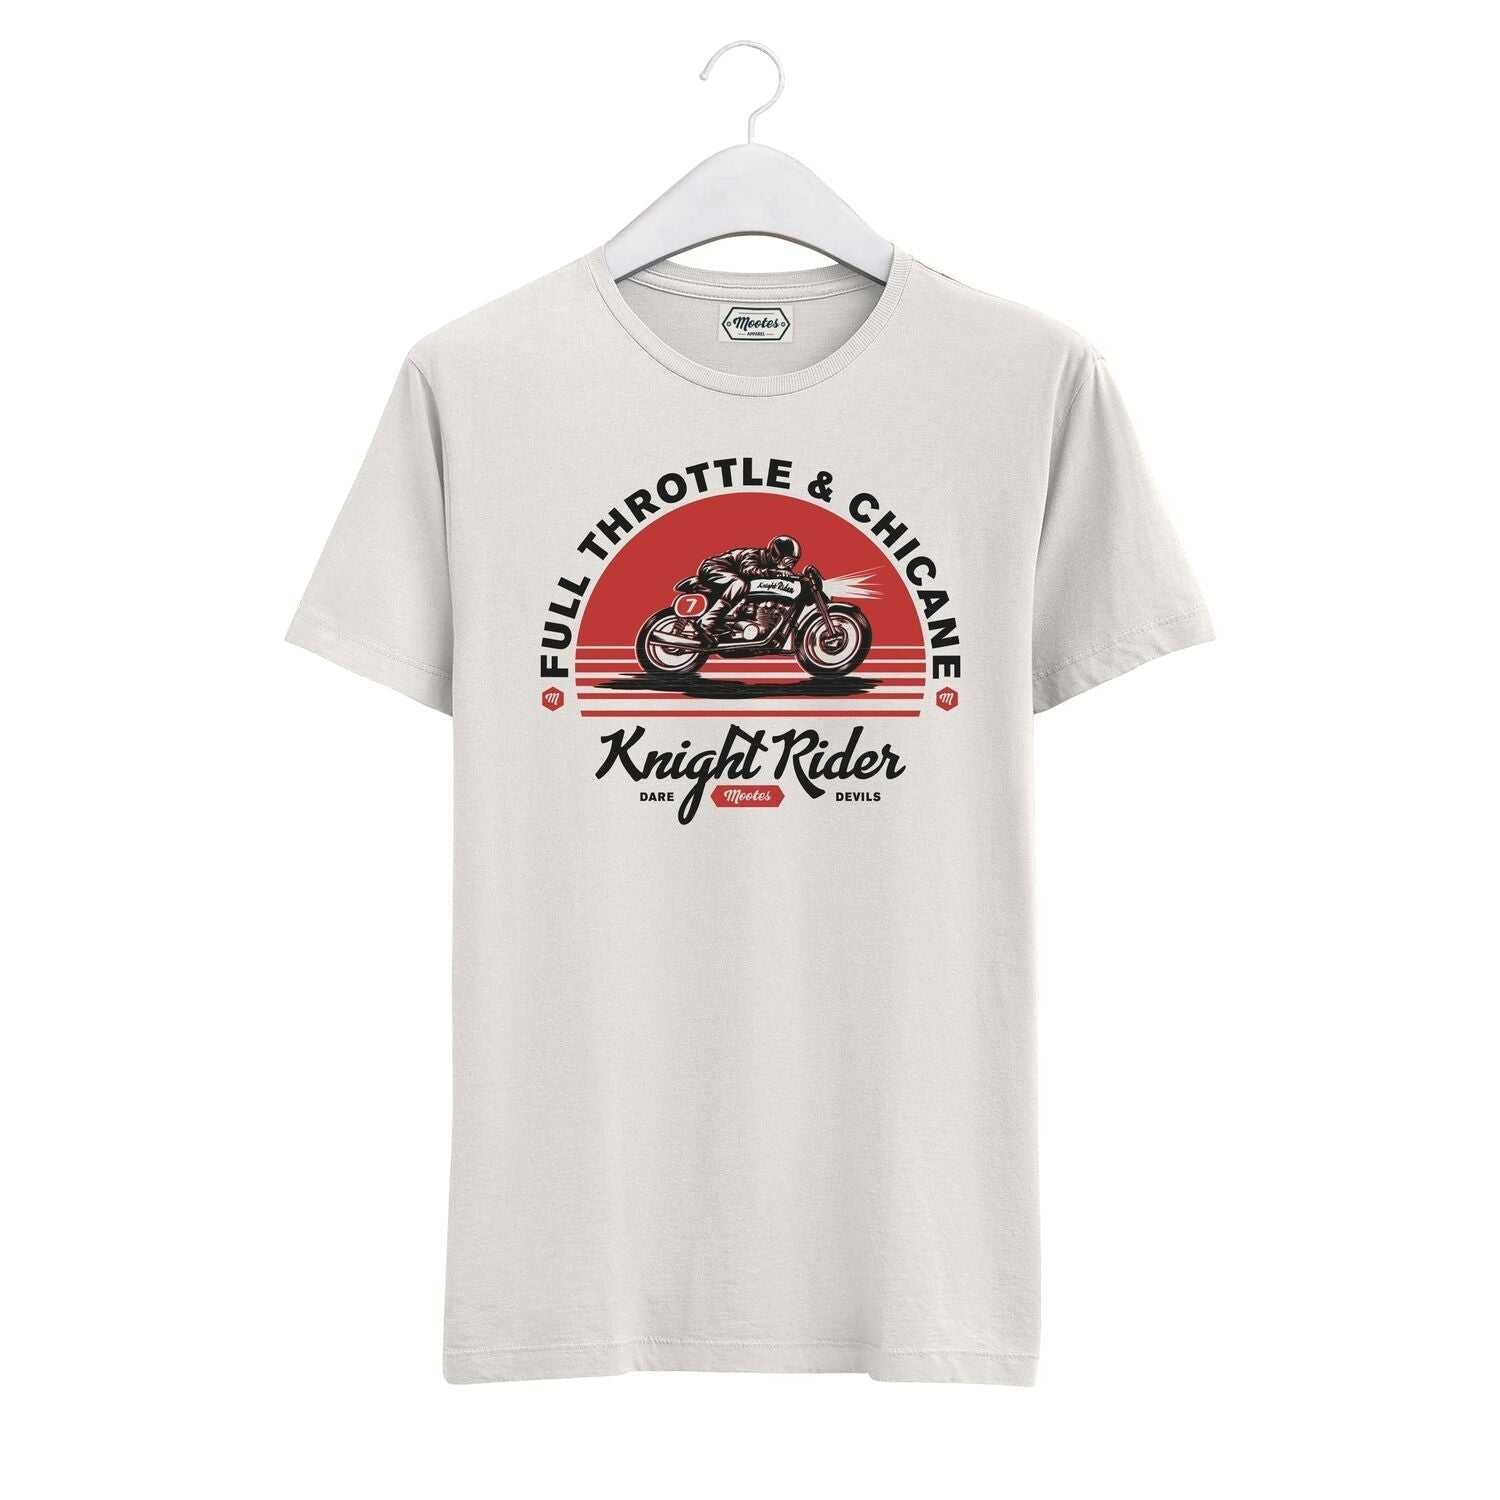 T-Shirt Knight Rider - Mootes